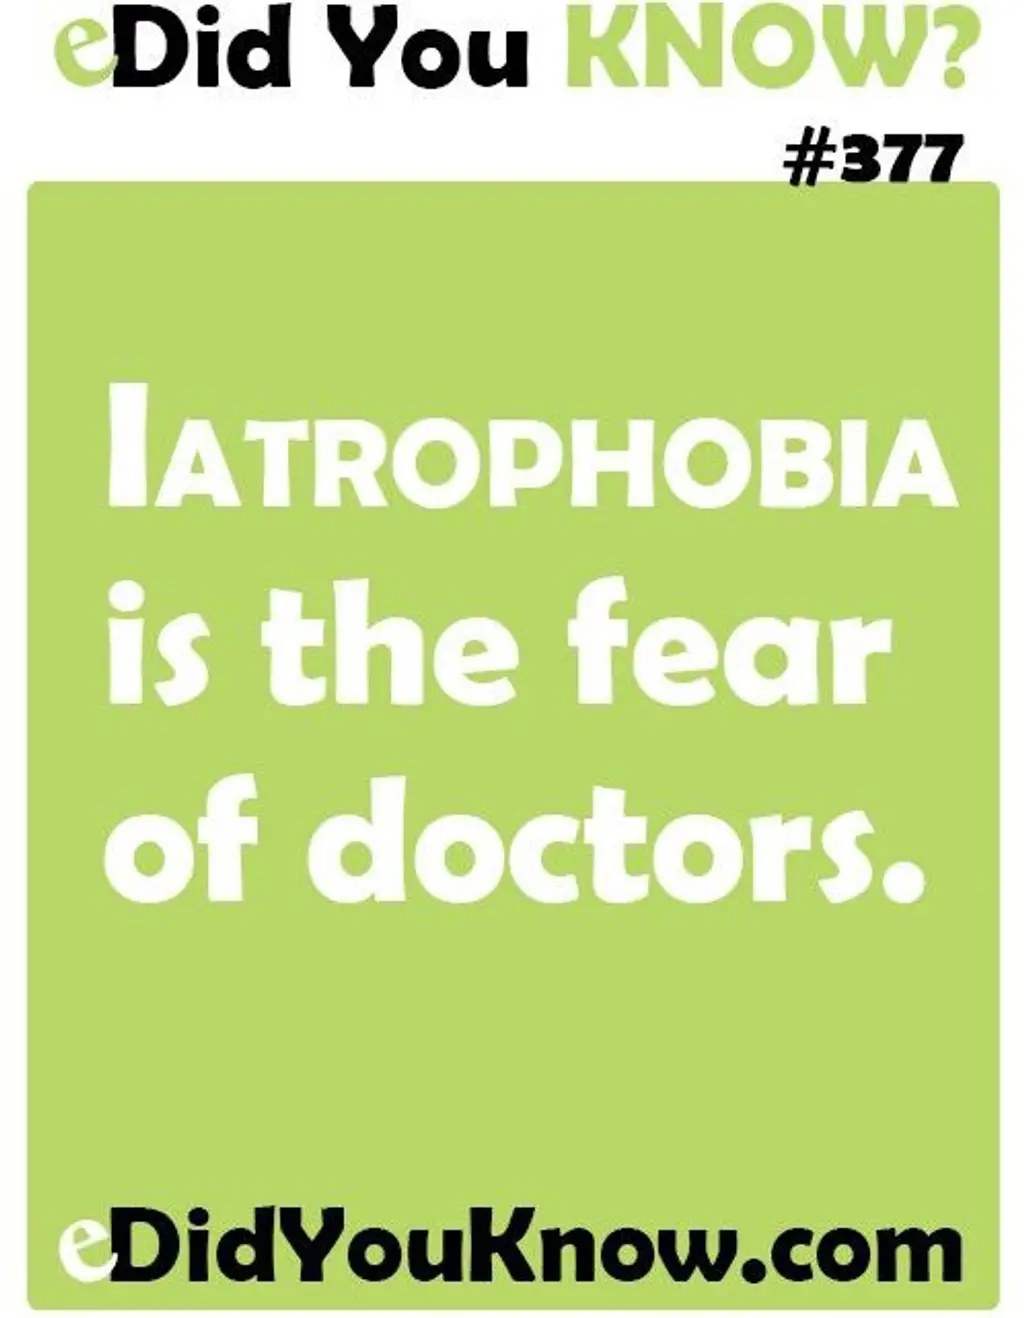 Iatrophobia